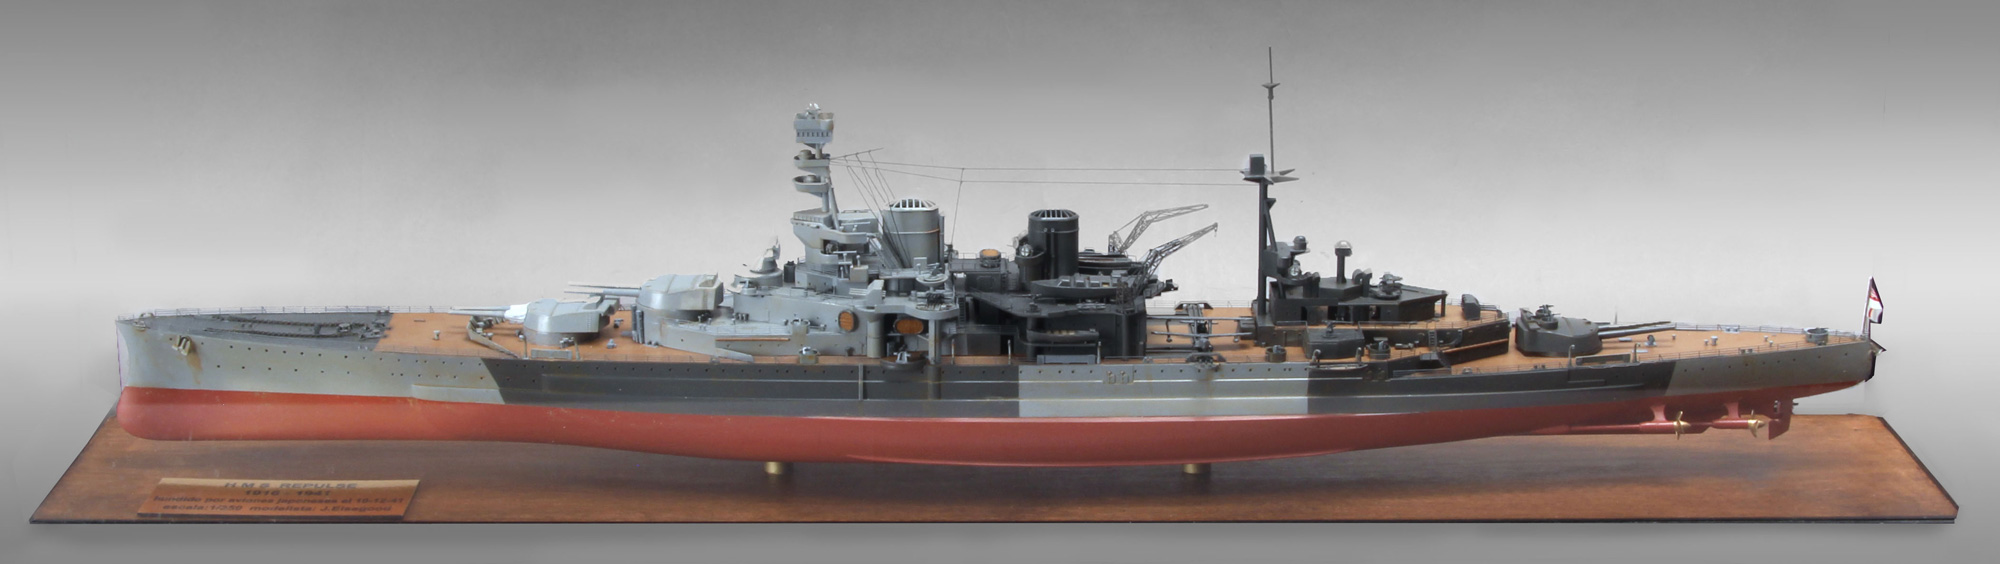  MAQUETA A ESCALA DEL CRUCERO DE BATALLA HMS REPULSE.